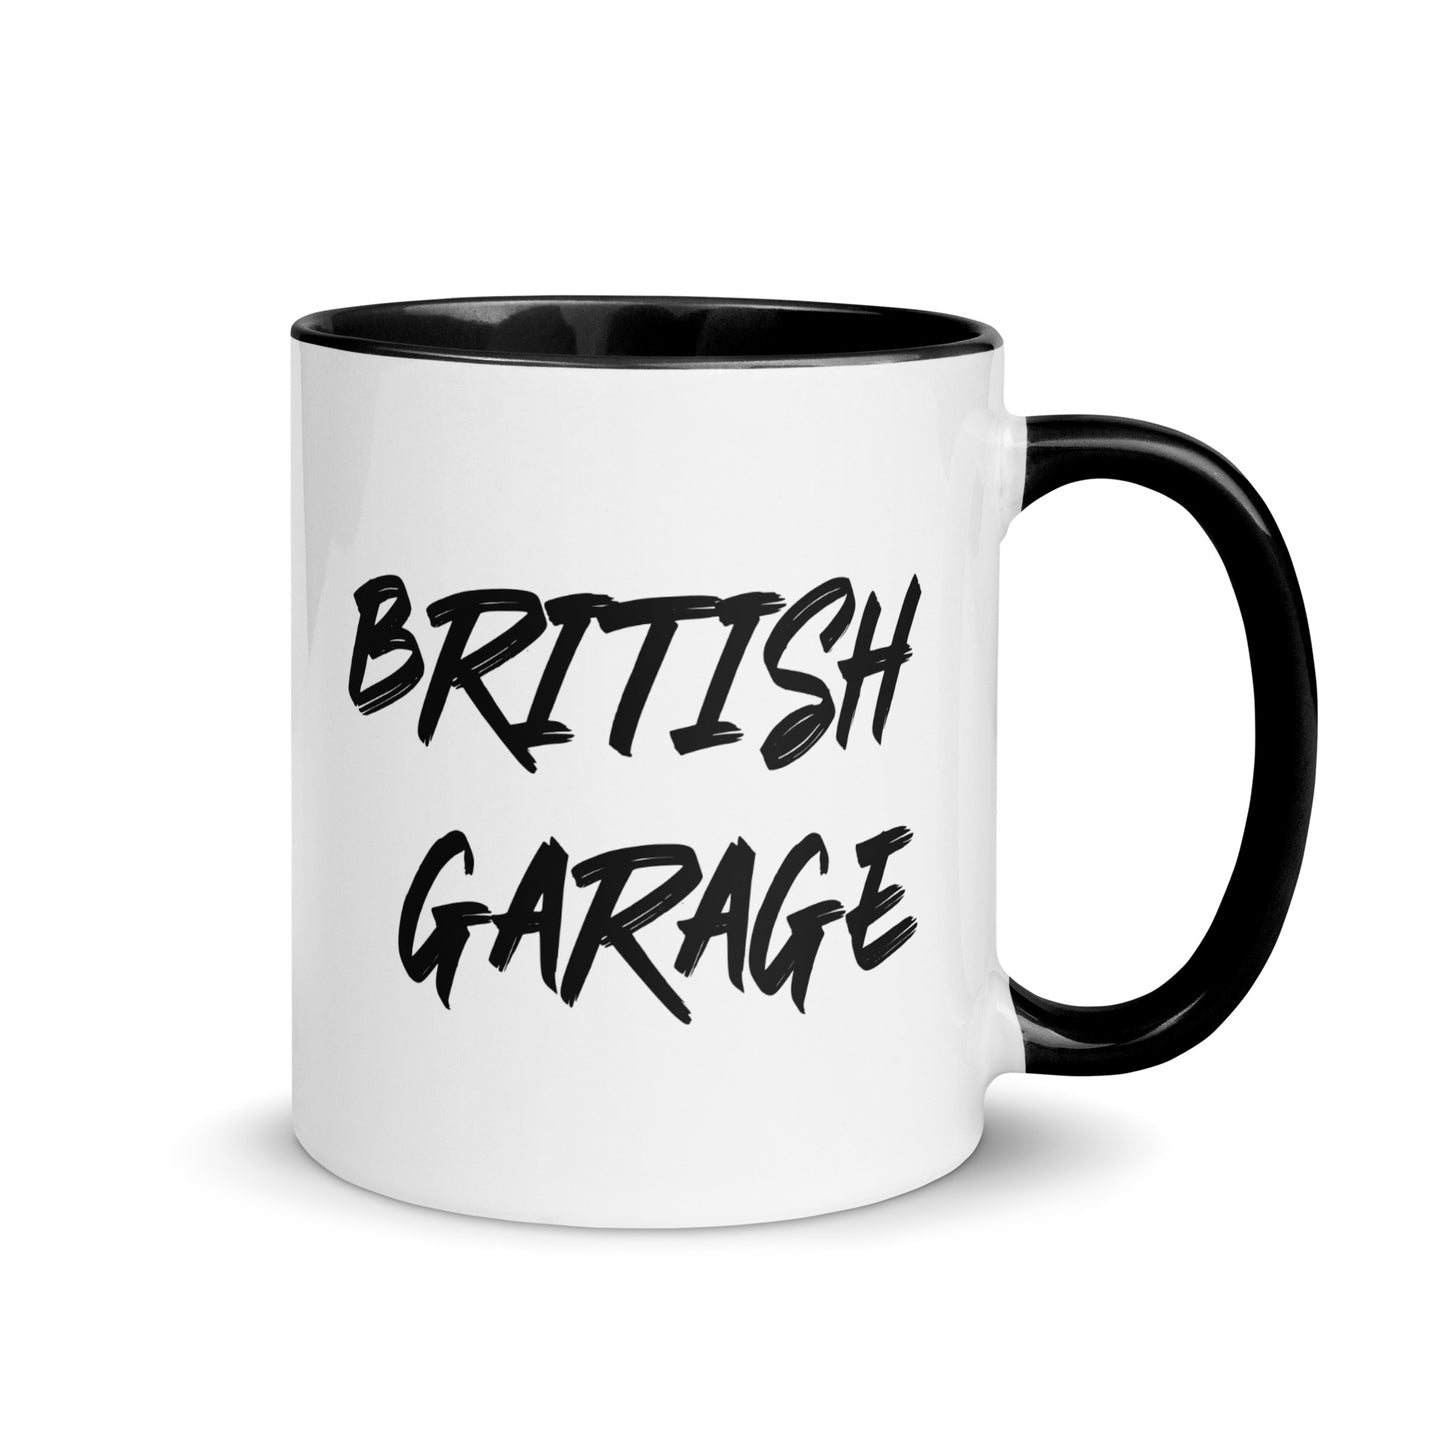 British-Garage-Tasse mit Mini-Aufdruck